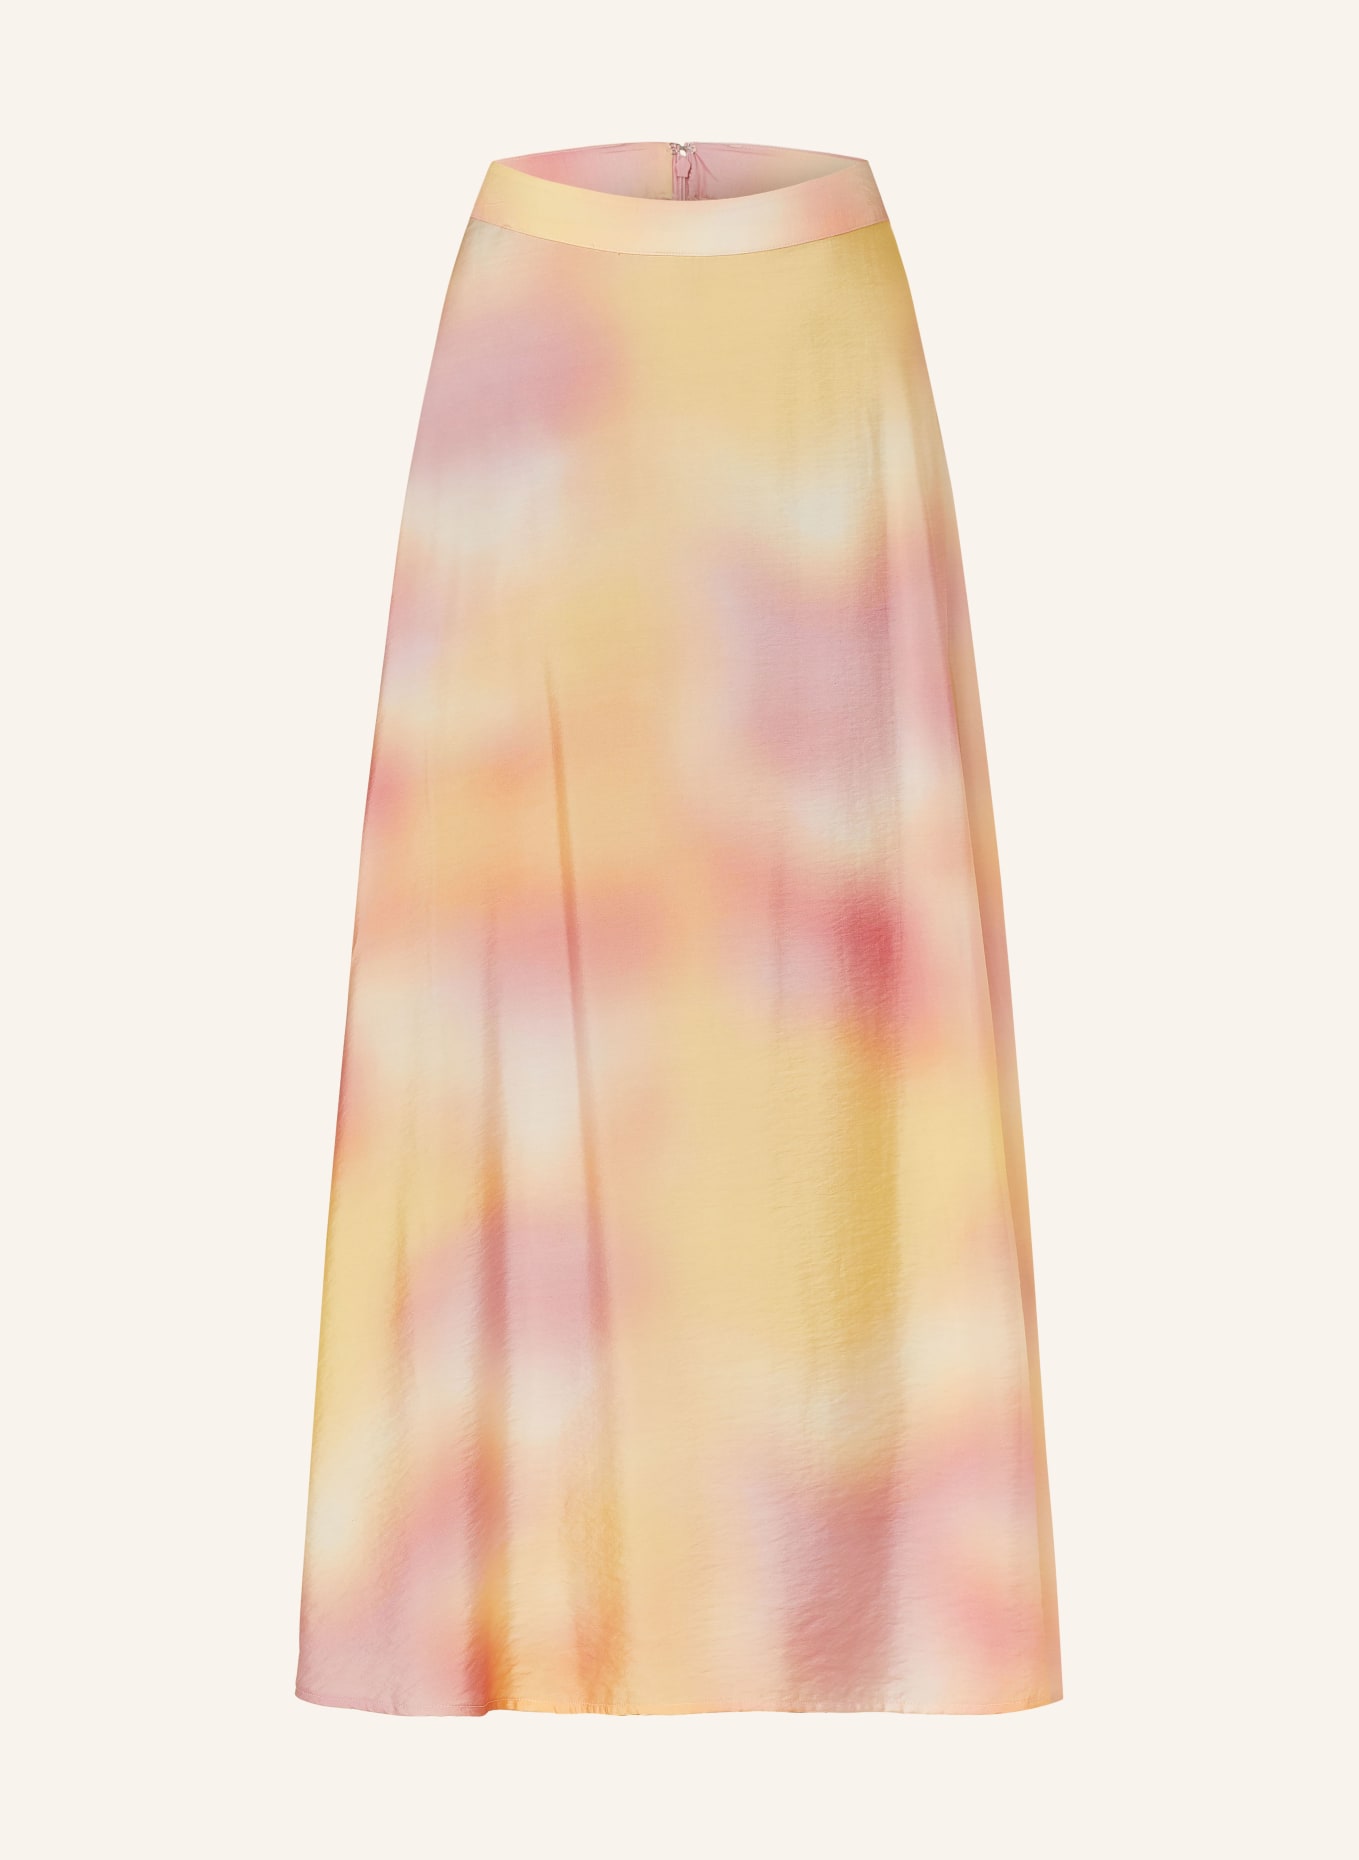 SOMETHINGNEW Skirt SNHEAVEN, Color: YELLOW/ LIGHT RED/ LIGHT ORANGE (Image 1)